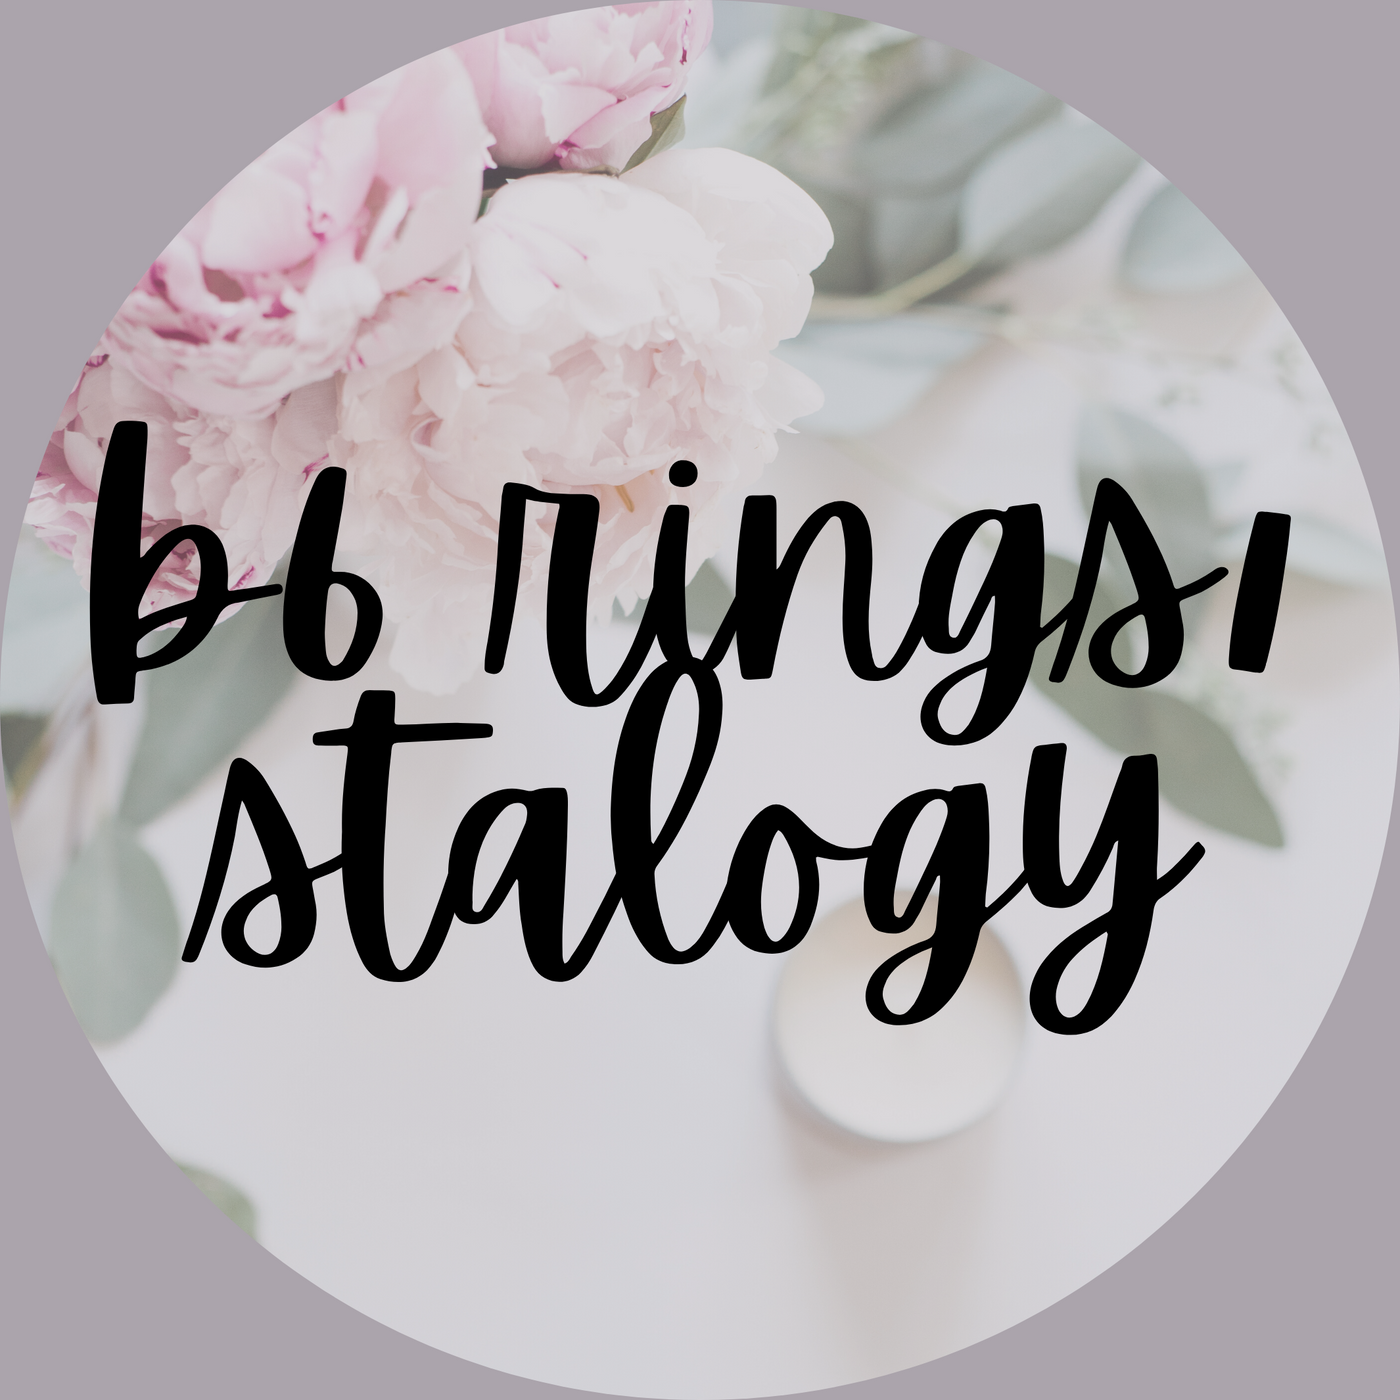 B6 Rings/Stalogy